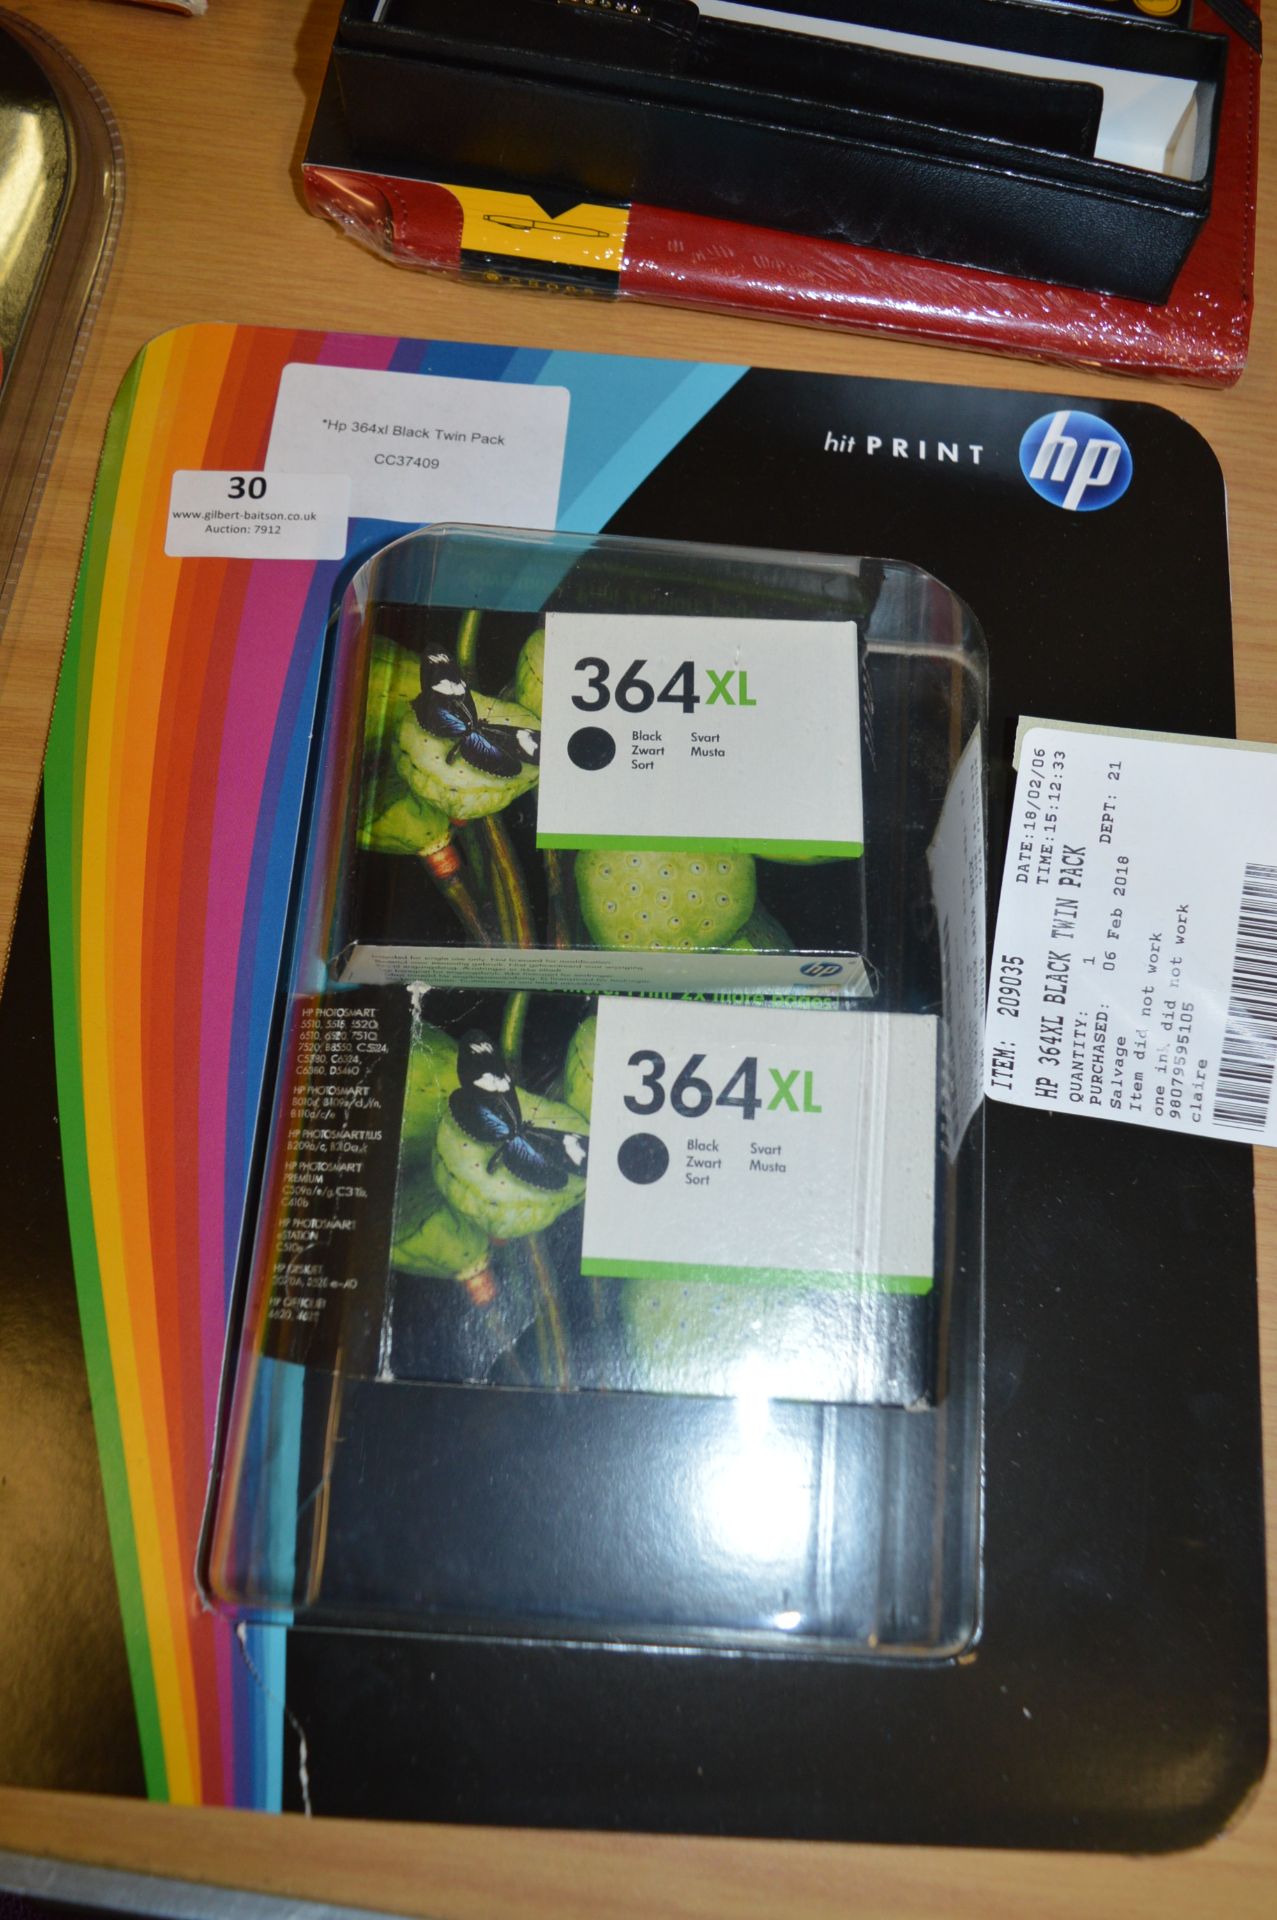 *HP 364xl Black Twin Pack Inkjet Cartridges